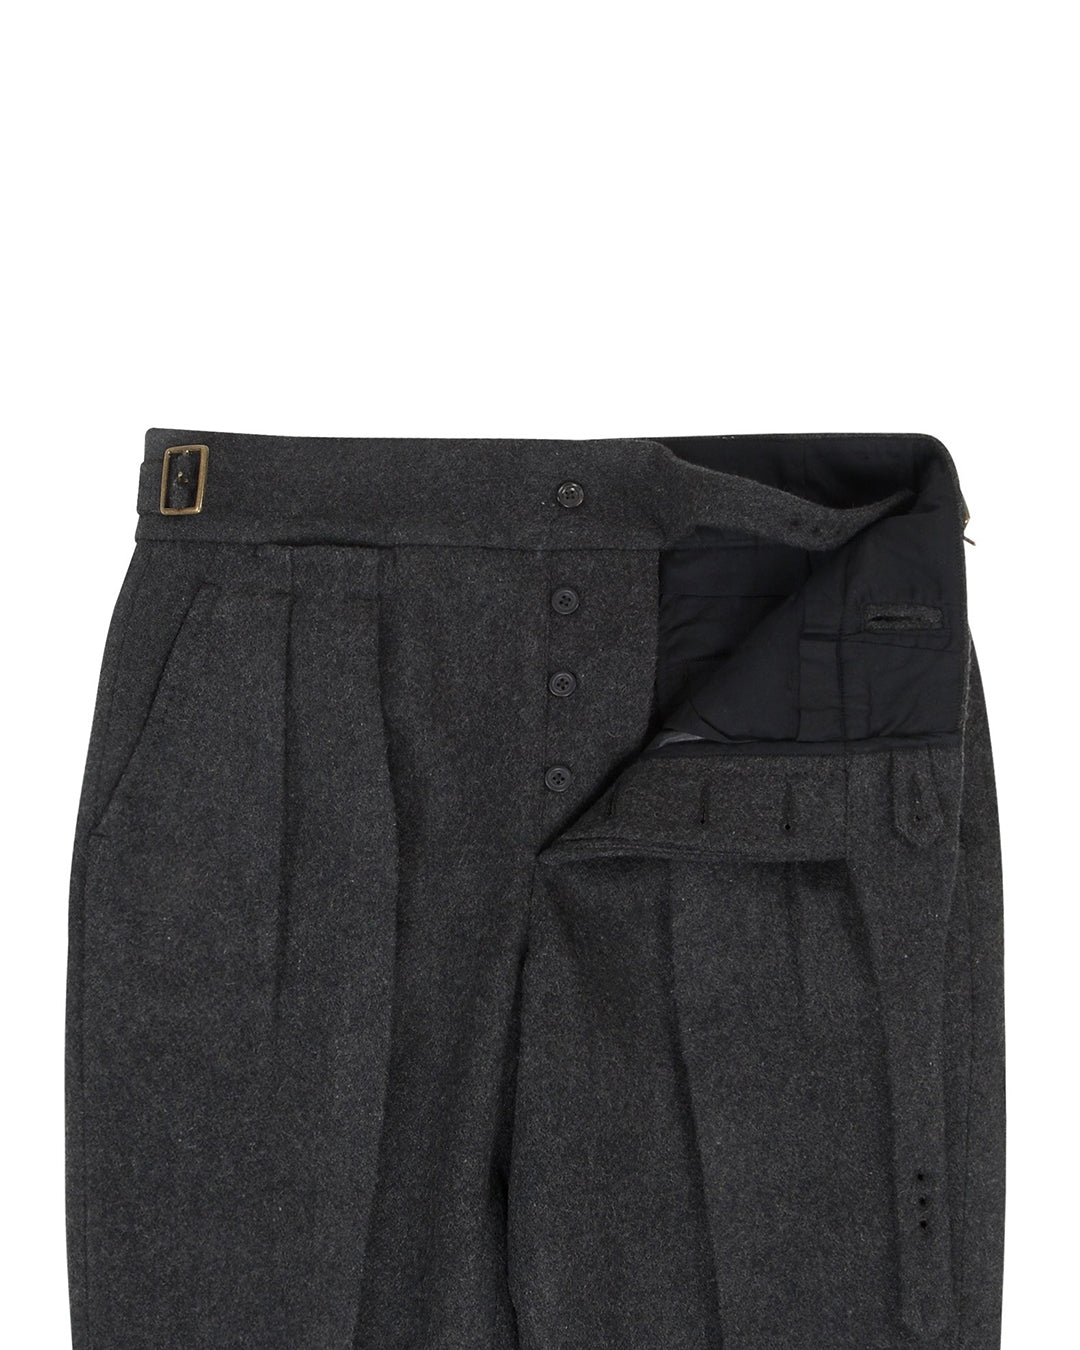 Dobell Black 100% Wool Tuxedo Pants | Dobell